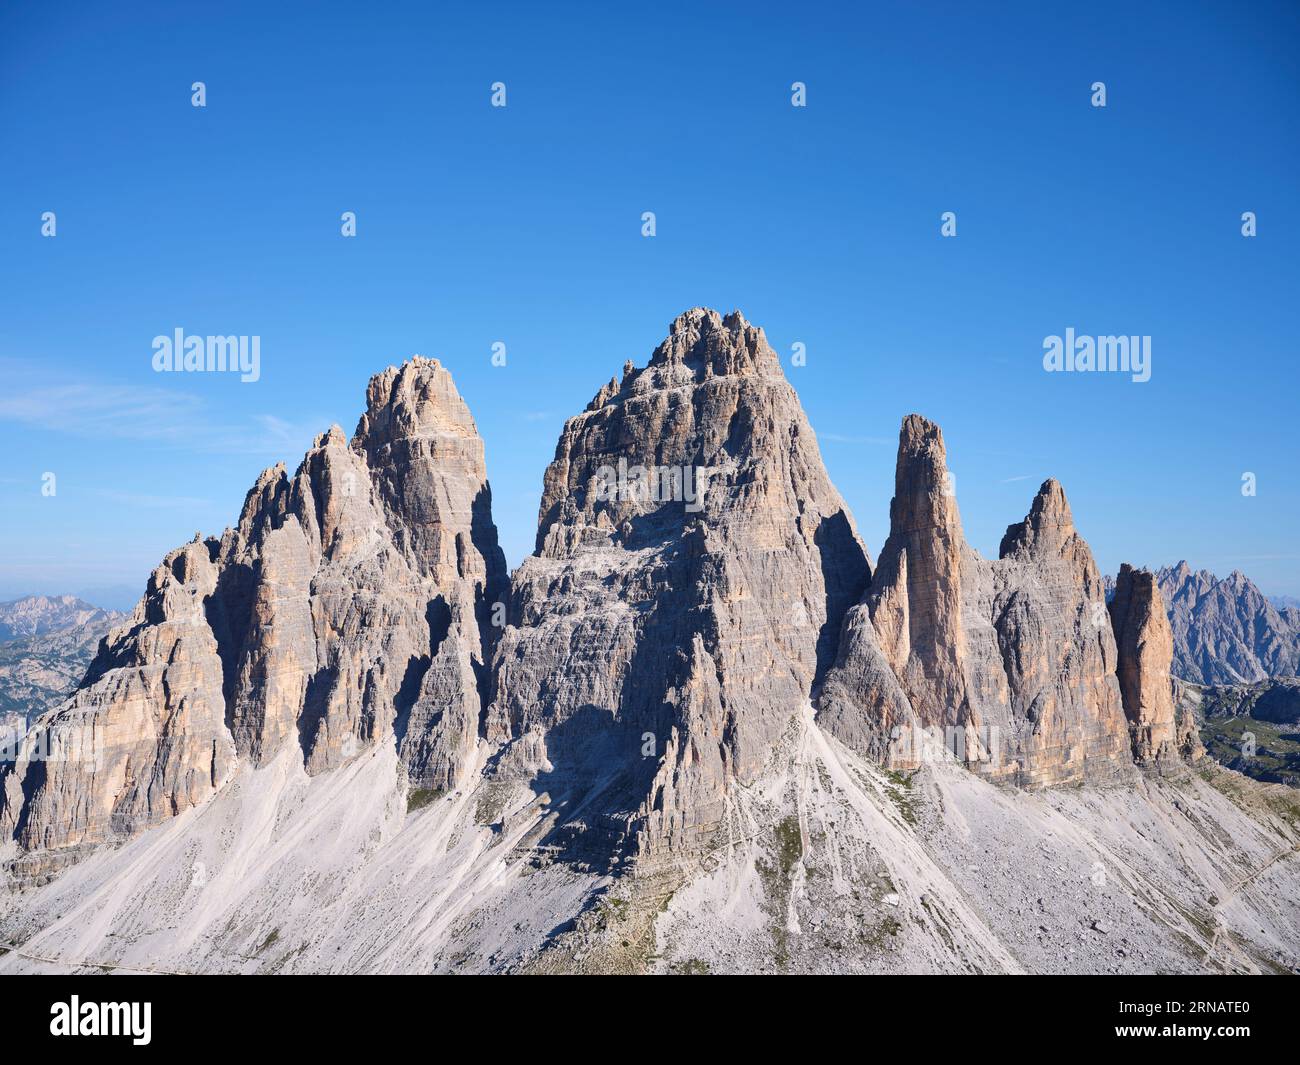 VISTA AEREA. Il lato rivolto a sud delle iconiche tre Cime di Lavaredo (altitudine: 2999 metri). Auronzo di Cadore, provincia di Belluno, Veneto, Italia. Foto Stock